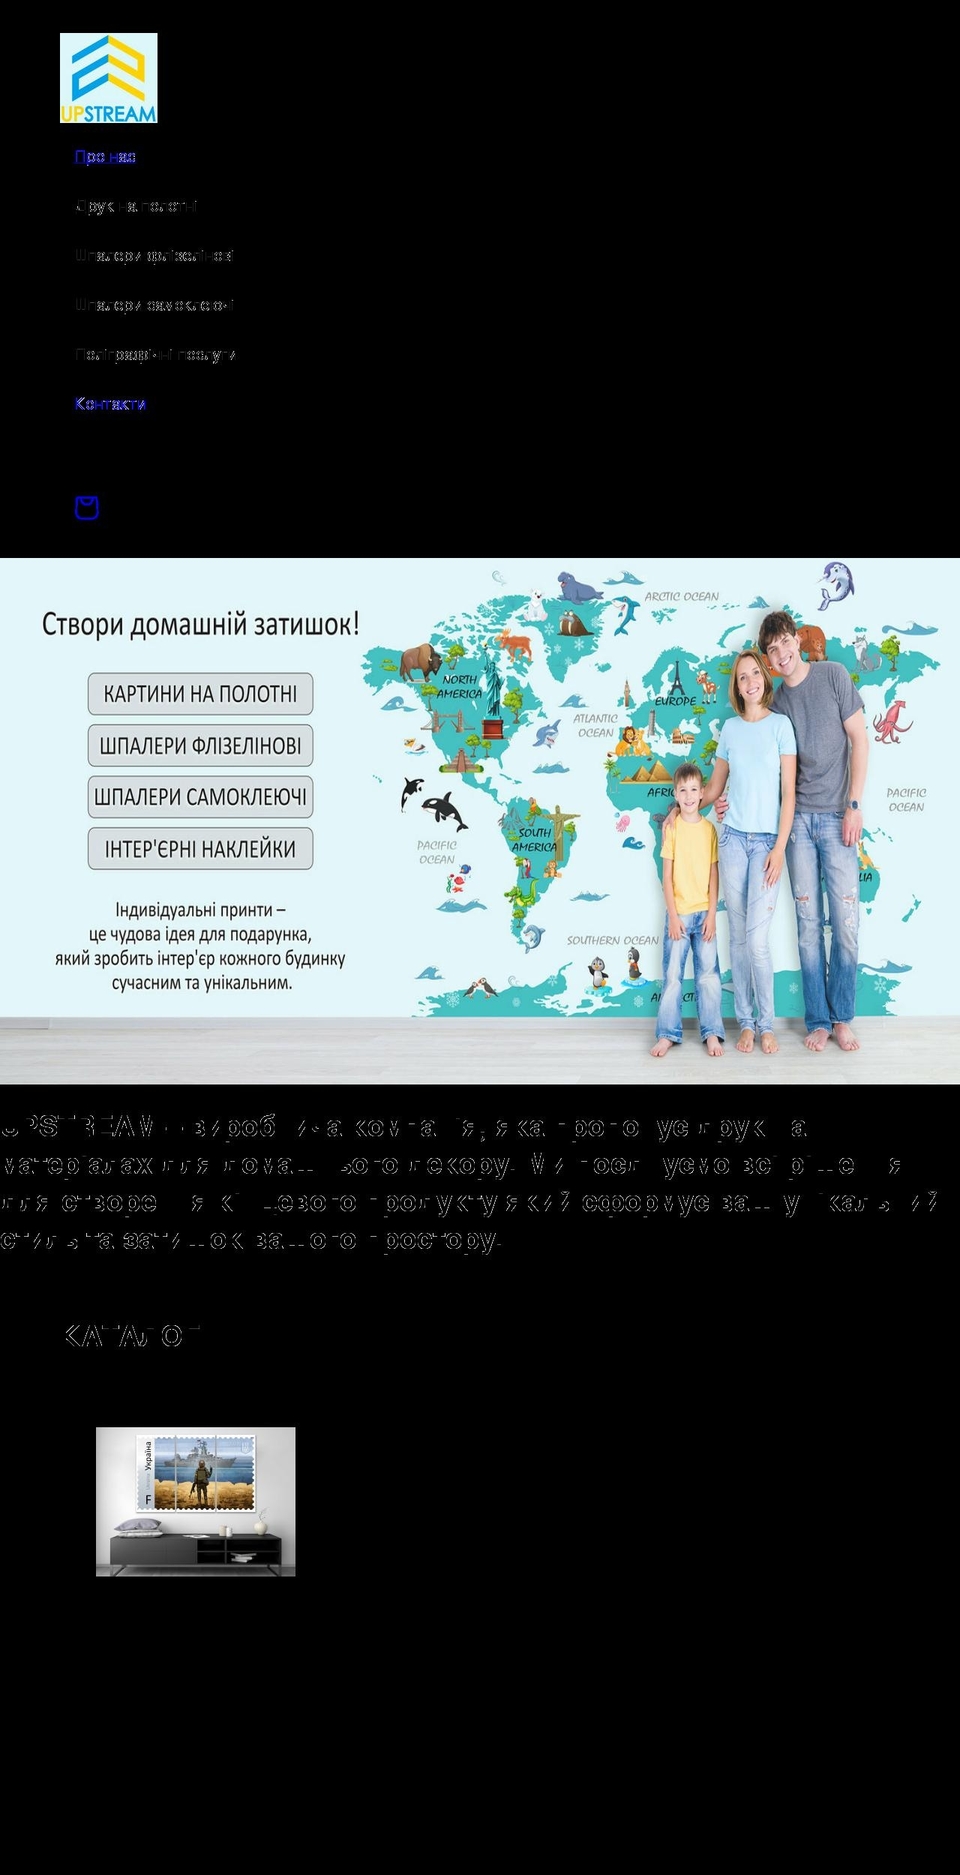 upstream.com.ua shopify website screenshot